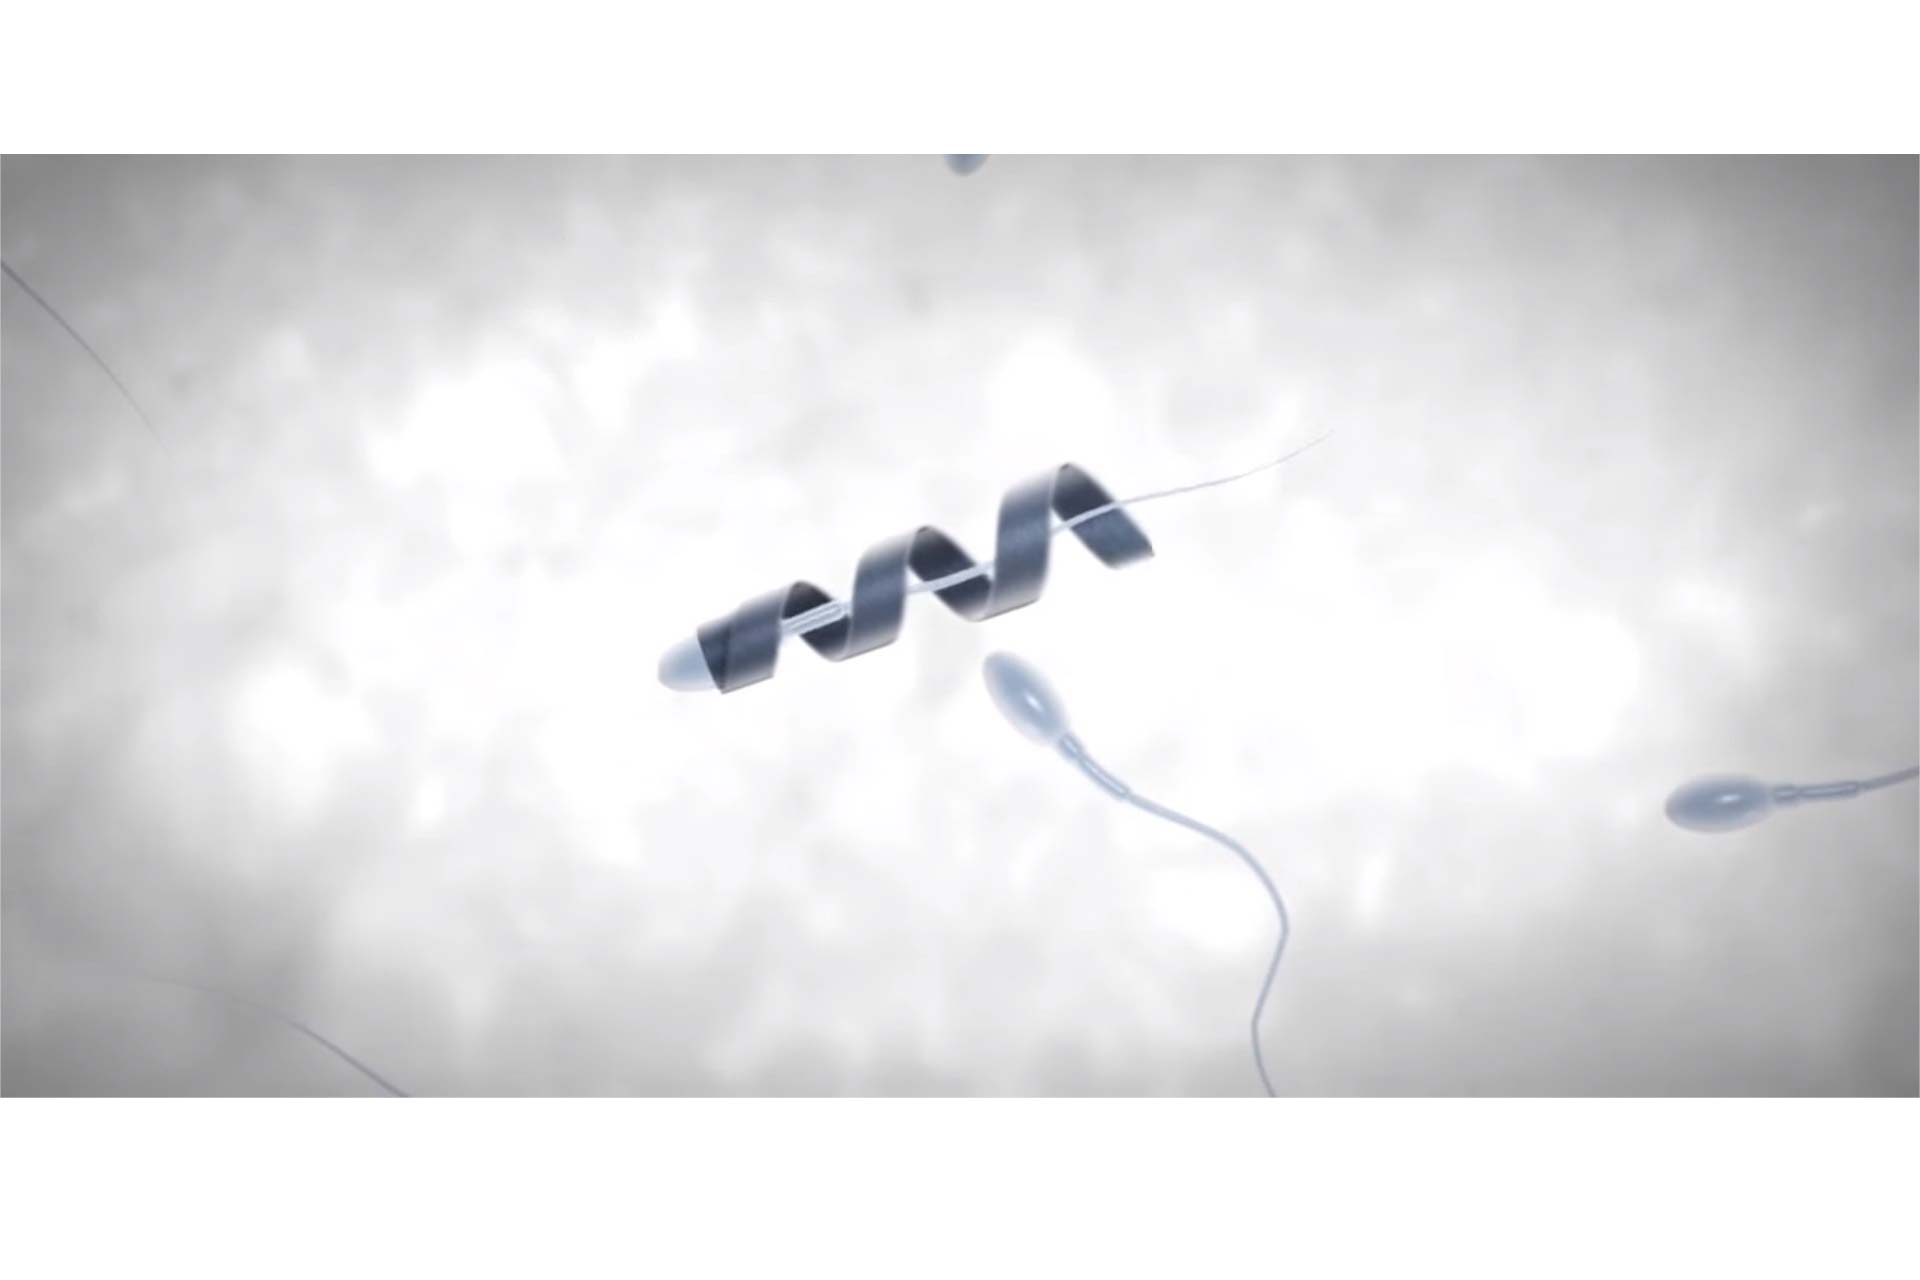 Spermbot planea convertirse en el método por excelencia de inseminación artificial